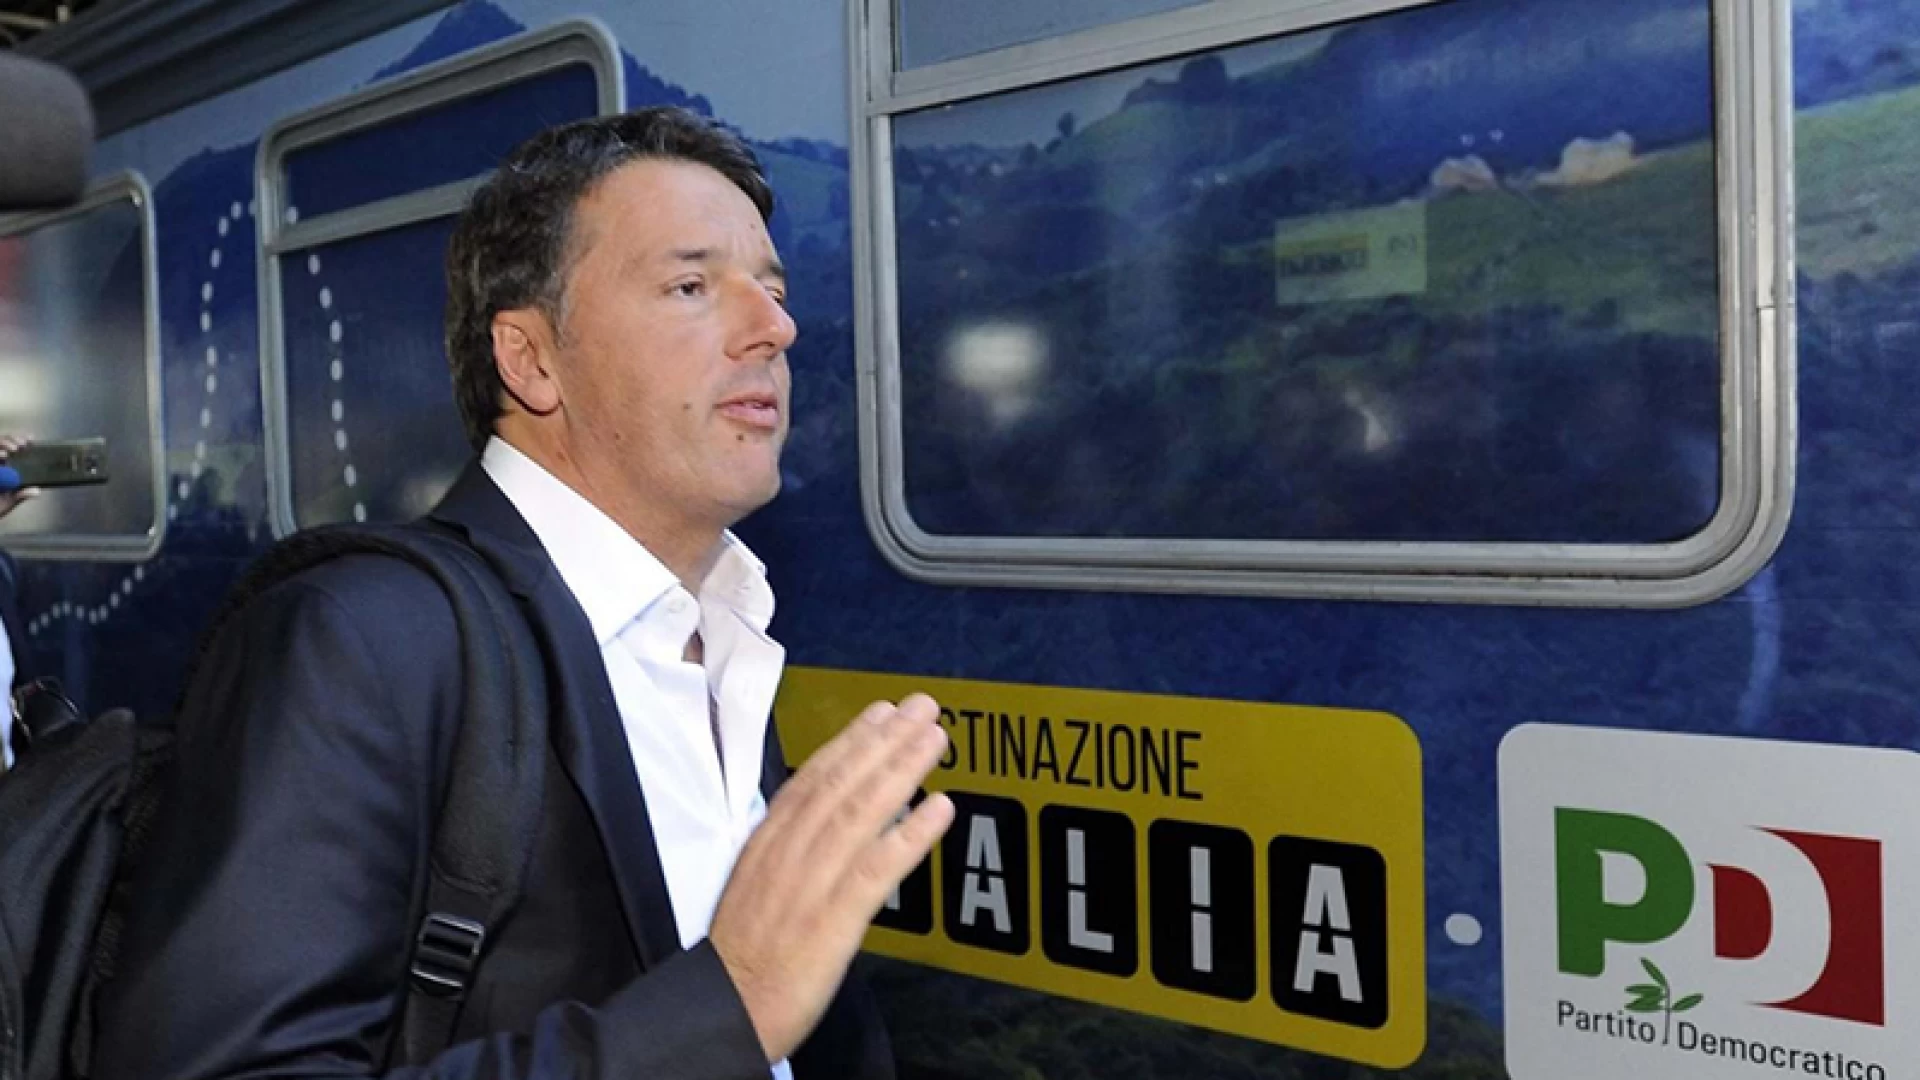 Venafro: Renzi Torna in Molise. Oggi pomeriggio l’arrivo alle 14.30 in città con il suo tour in treno denominato “Destinazione Italia”.